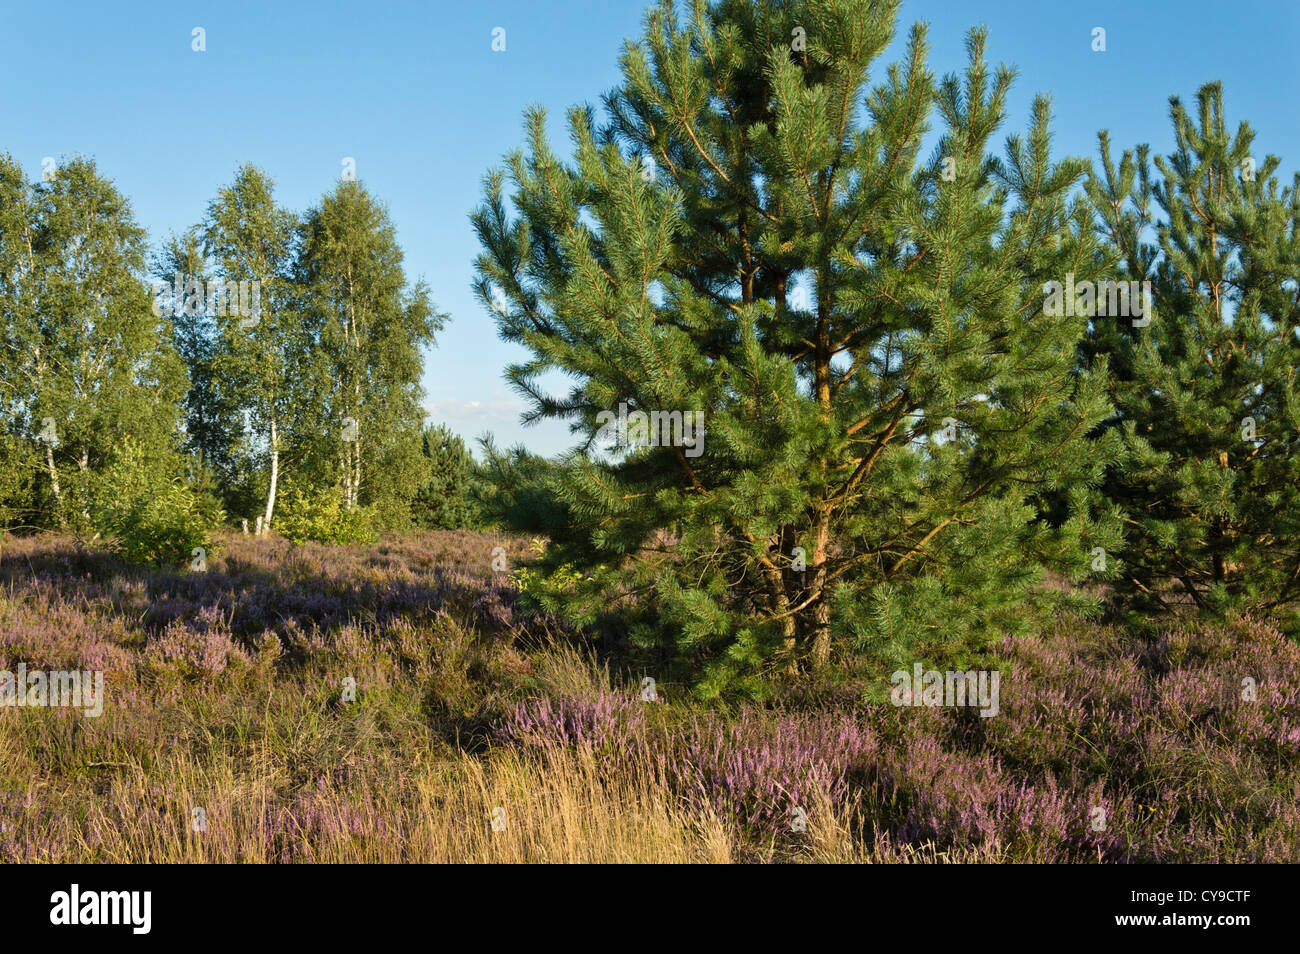 Gemeine Kiefer (Pinus sylvestris), gemeinsame Heidekraut (Calluna vulgaris) und Birken (Betula), schönower Heide Naturschutzgebiet, Deutschland Stockfoto